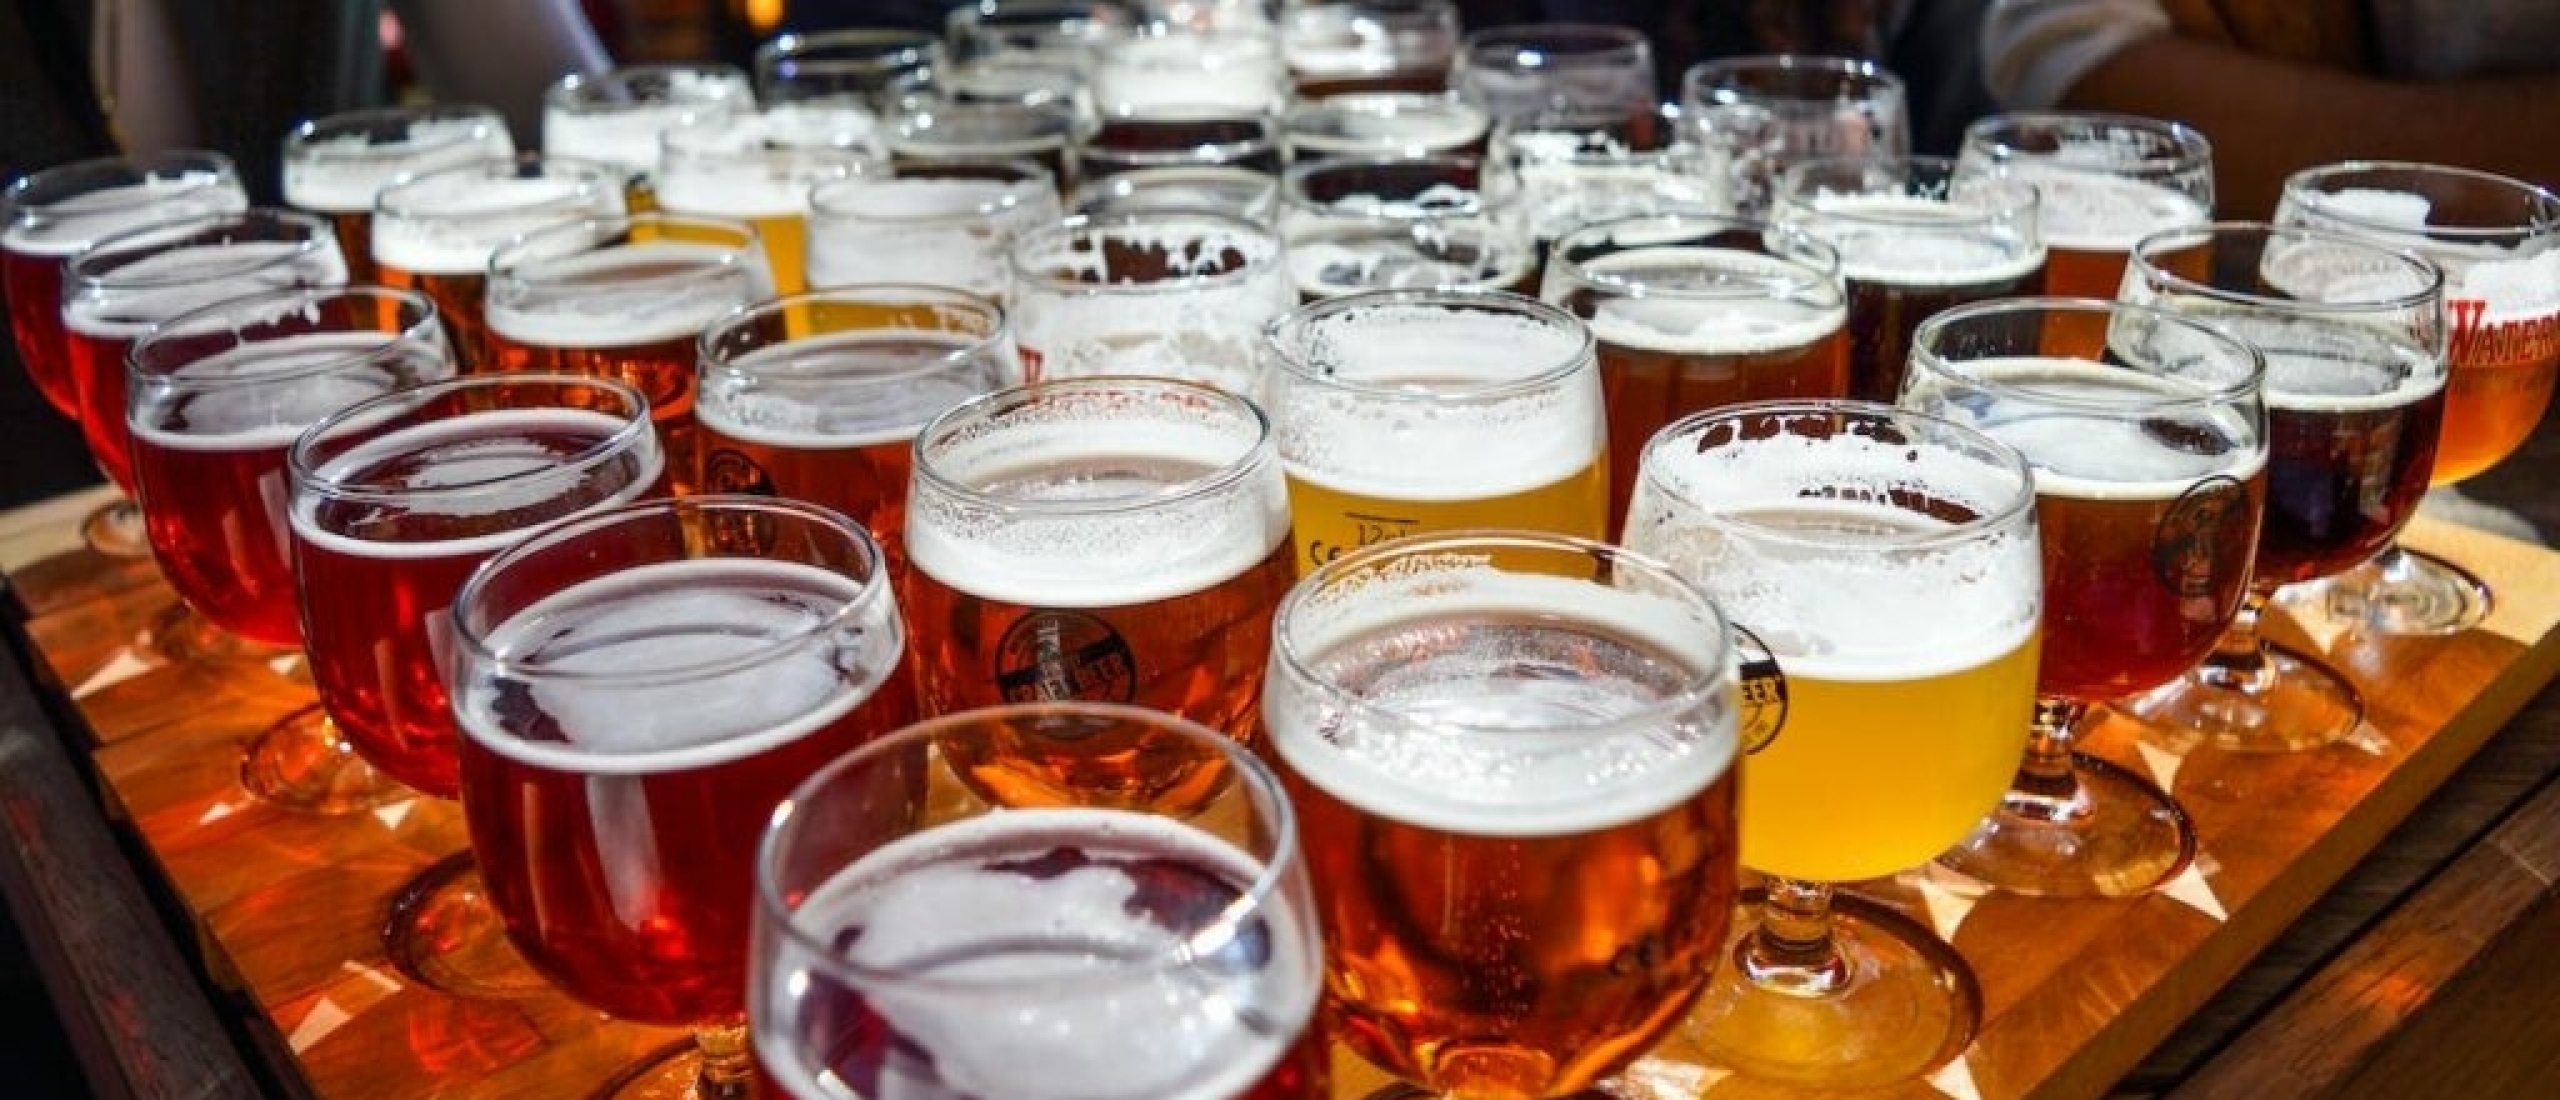 Hoe bier proeven als een echte Belgische bierkenner